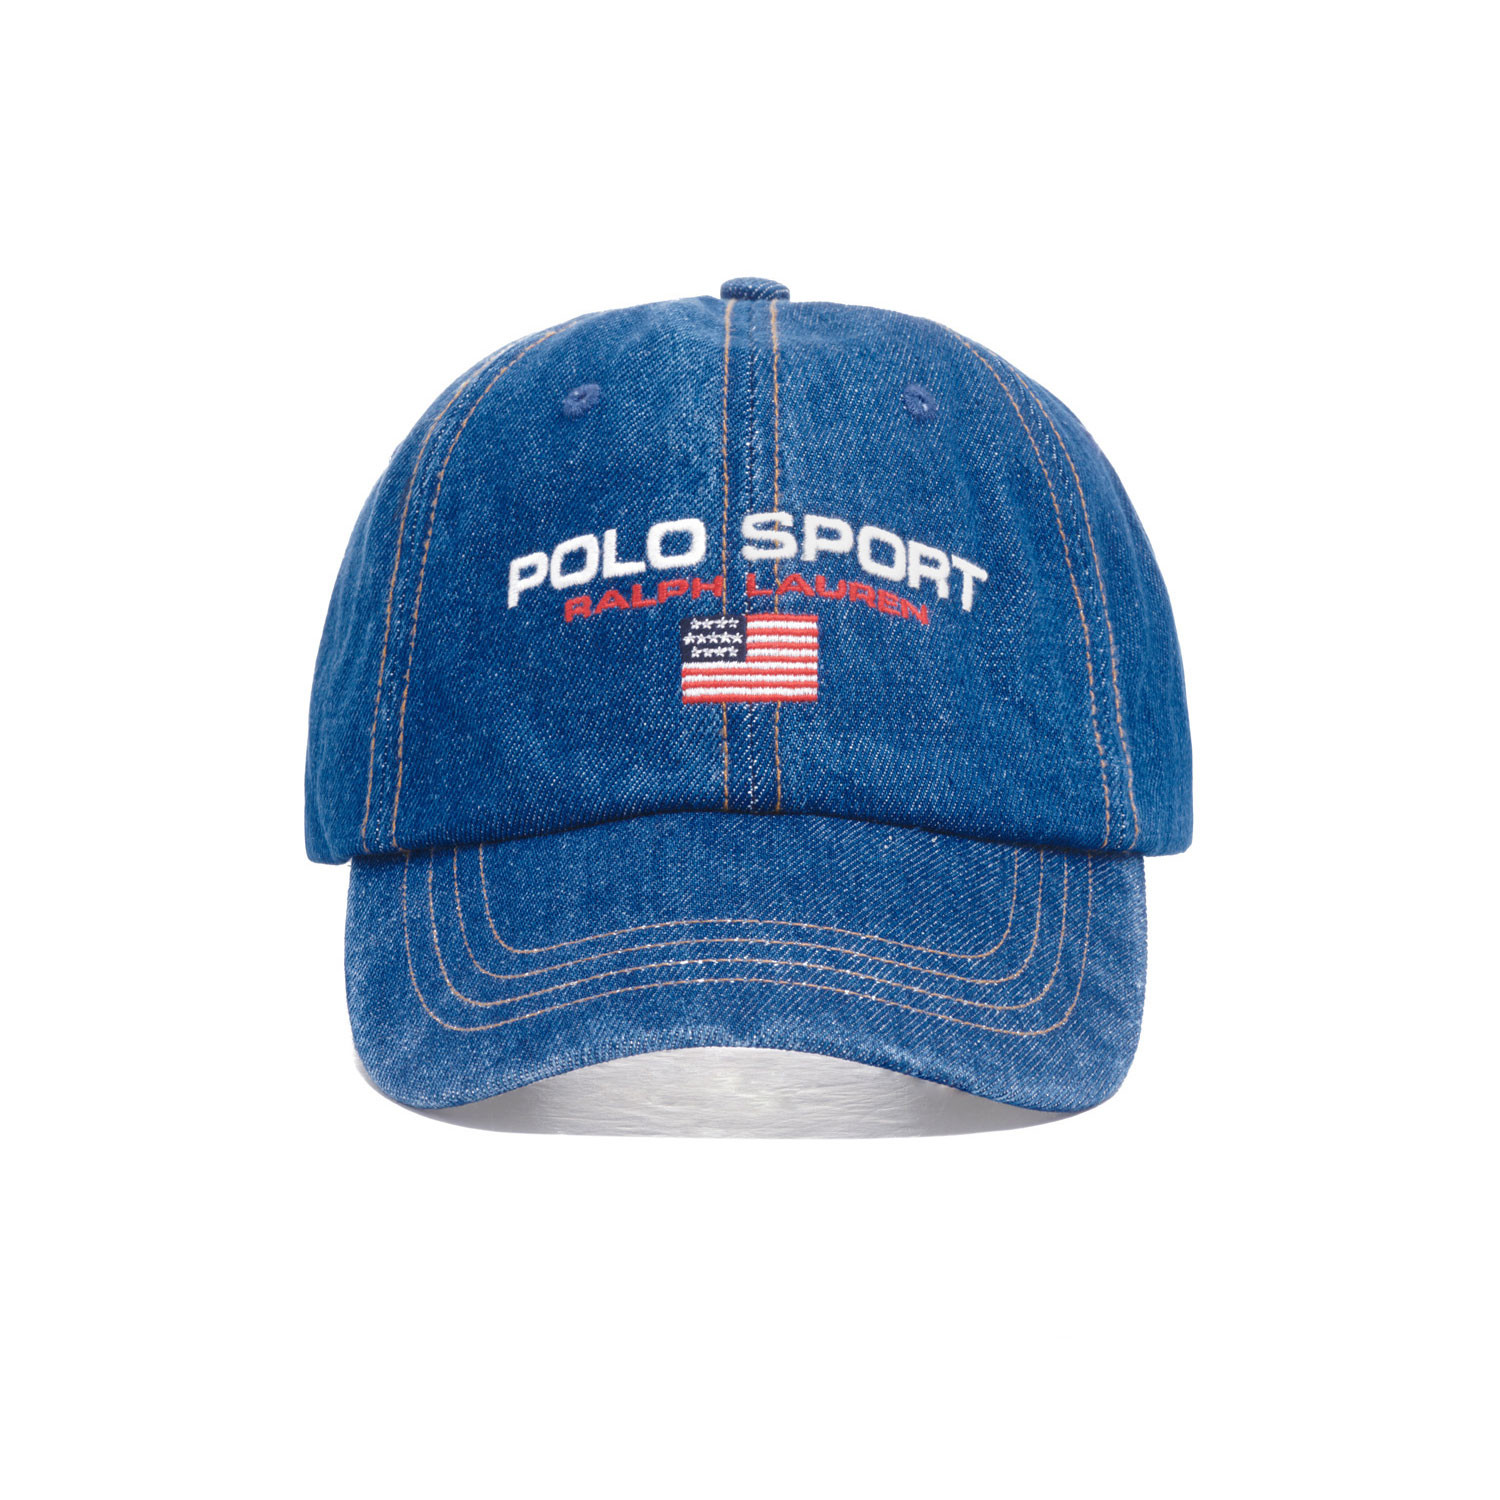 Polo Sport Ltd Hot Sale, 55% OFF | campingcanyelles.com